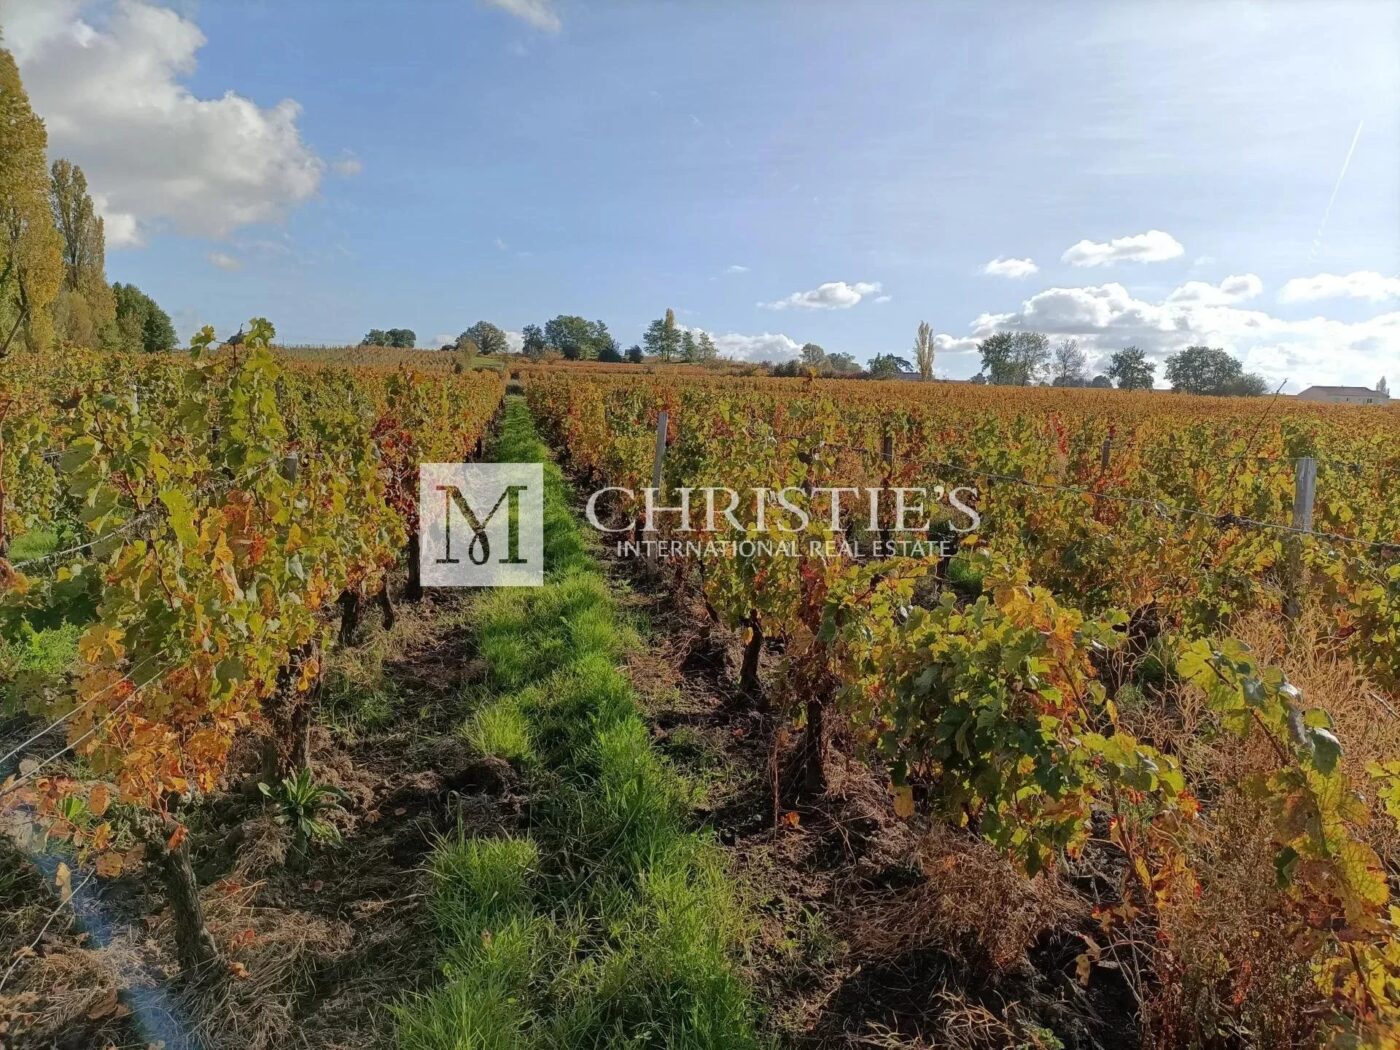 A vendre belle propriété viticole clé en main en AOC Côtes de Bourg / Blaye-Côtes de Bordeaux